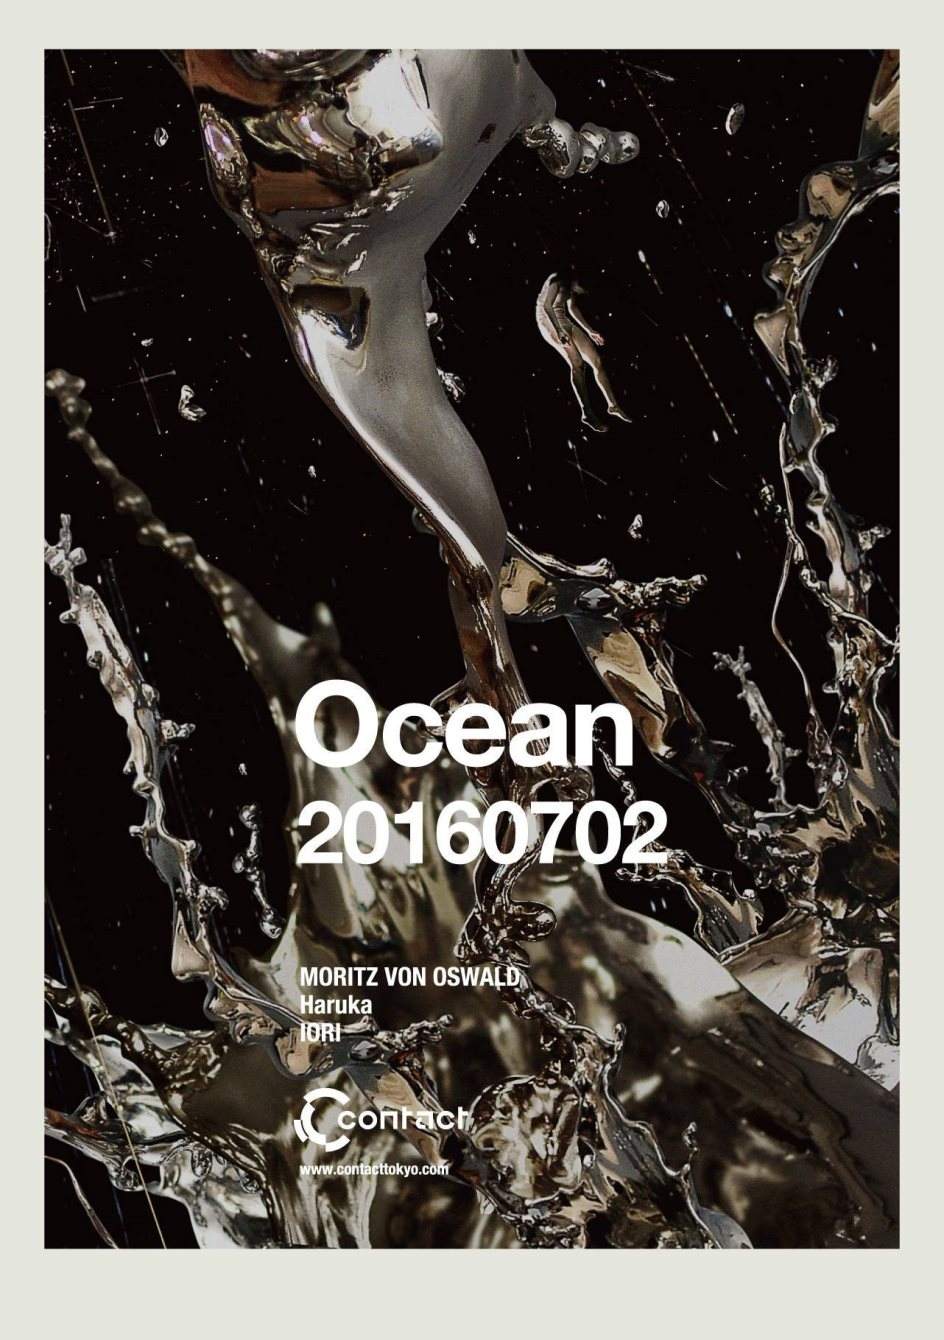 Ocean with Moritz von Oswald - フライヤー表